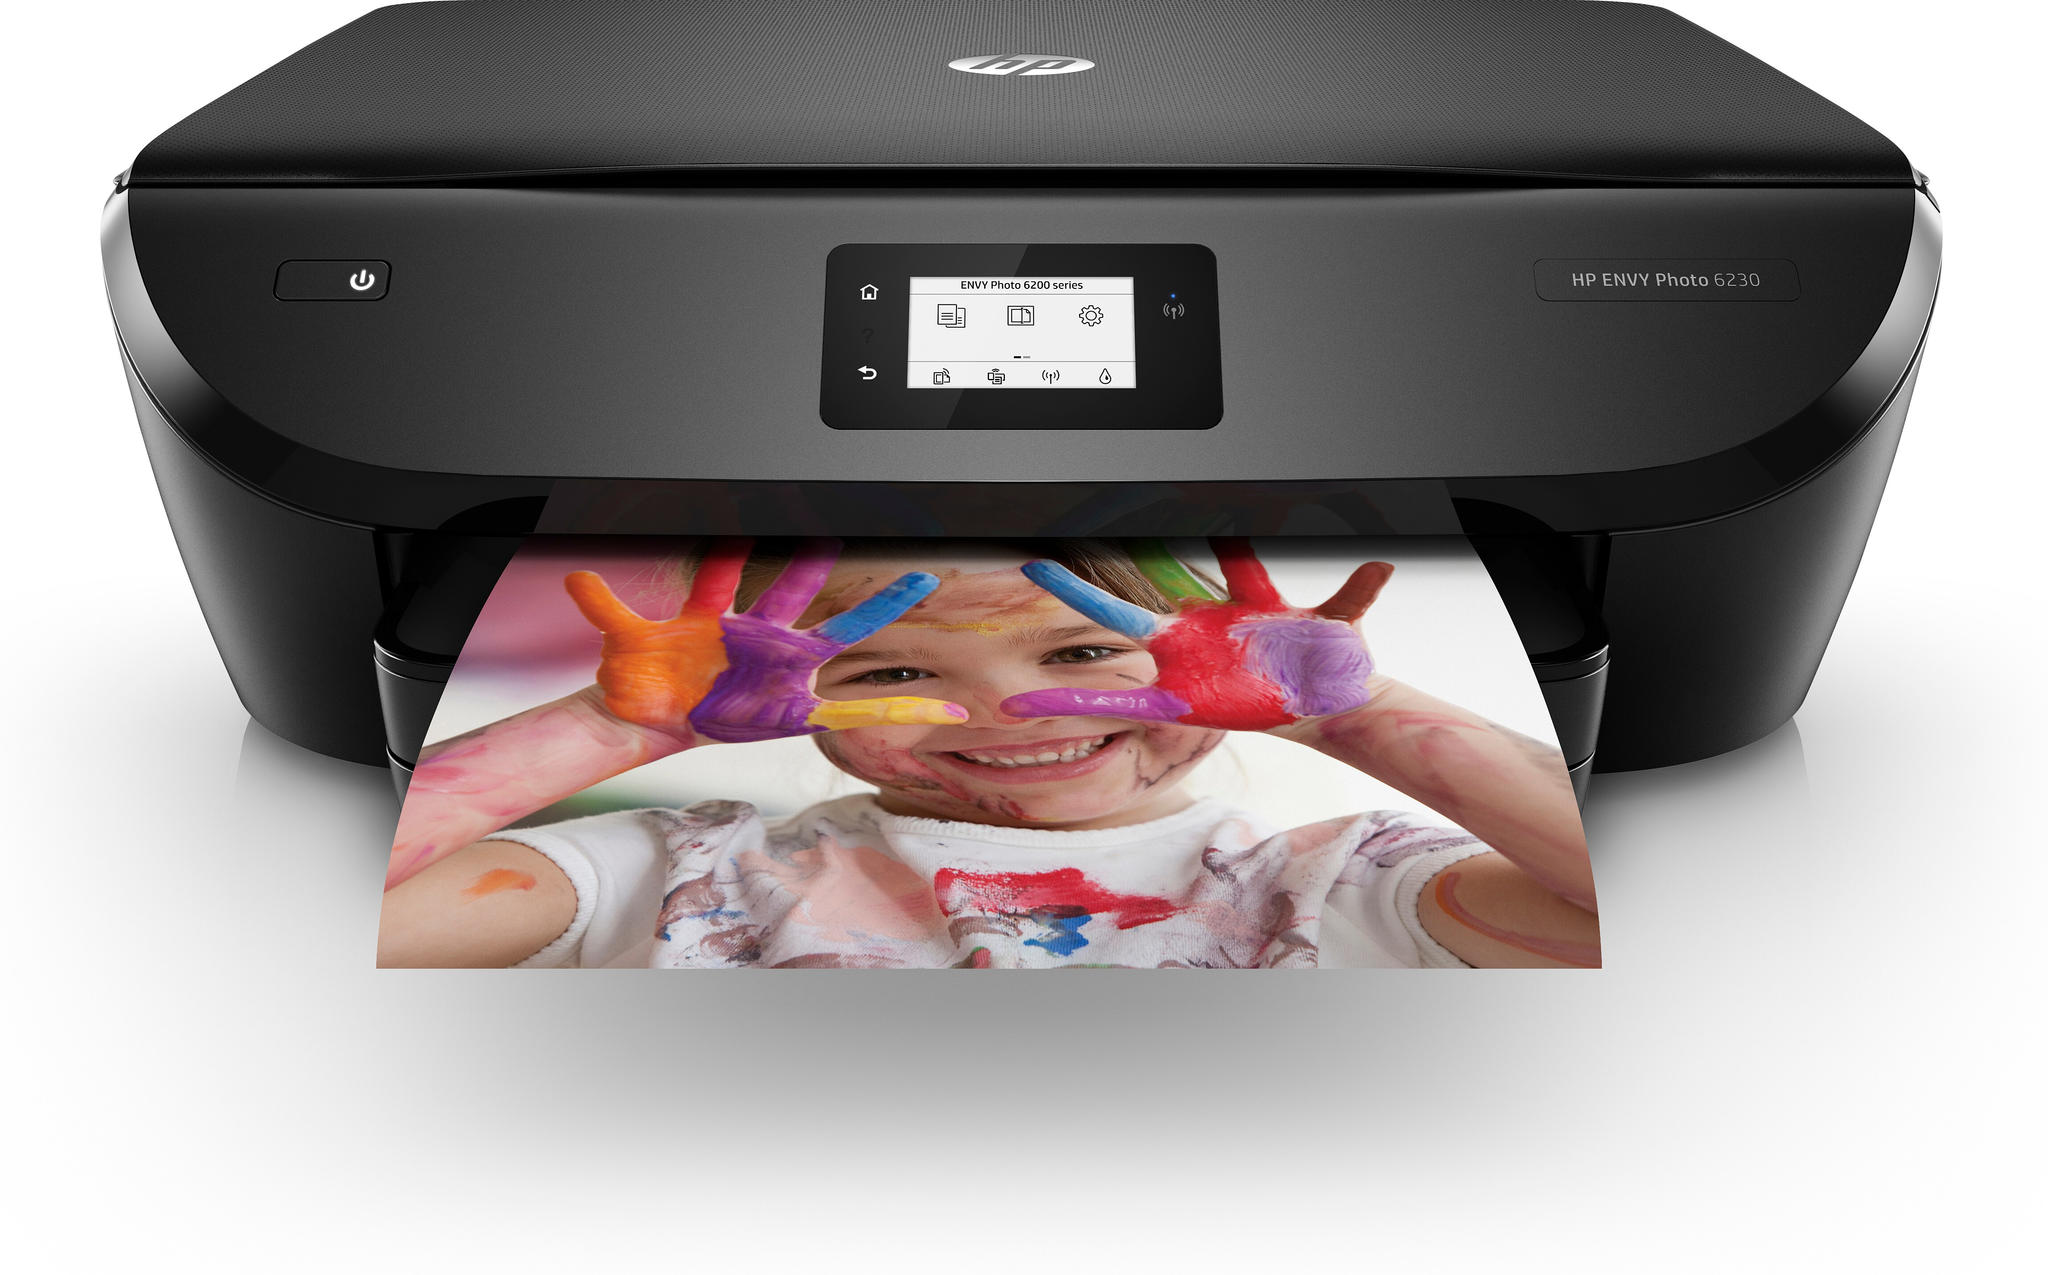 HP Envy Photo 6230 AiO printer